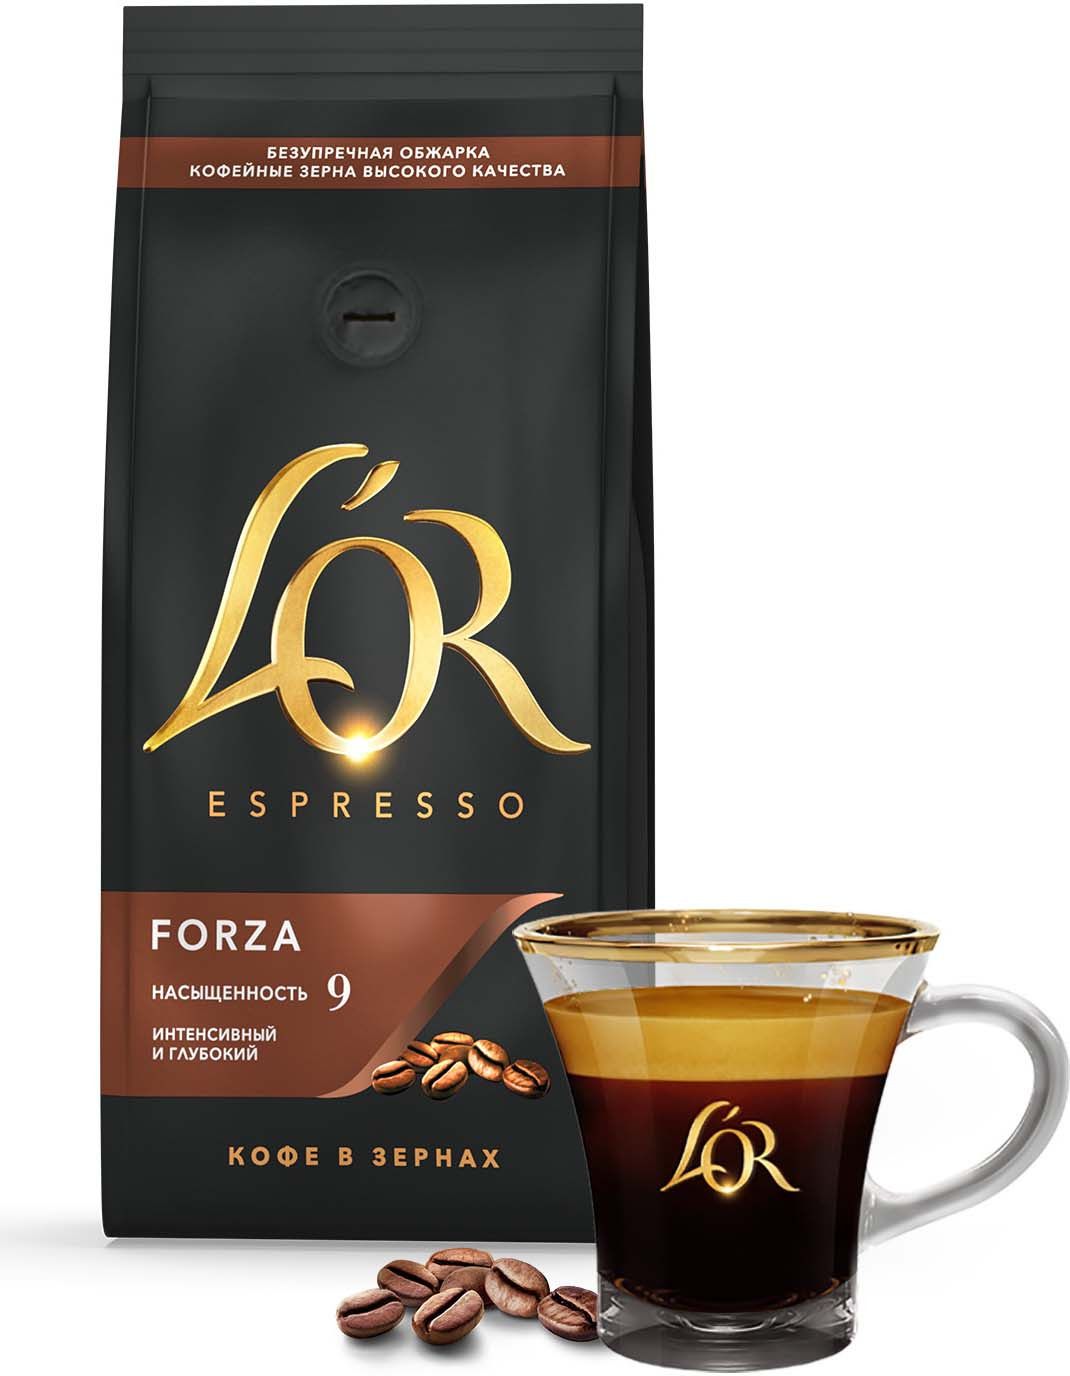 LOR Espresso Forza     , 230 